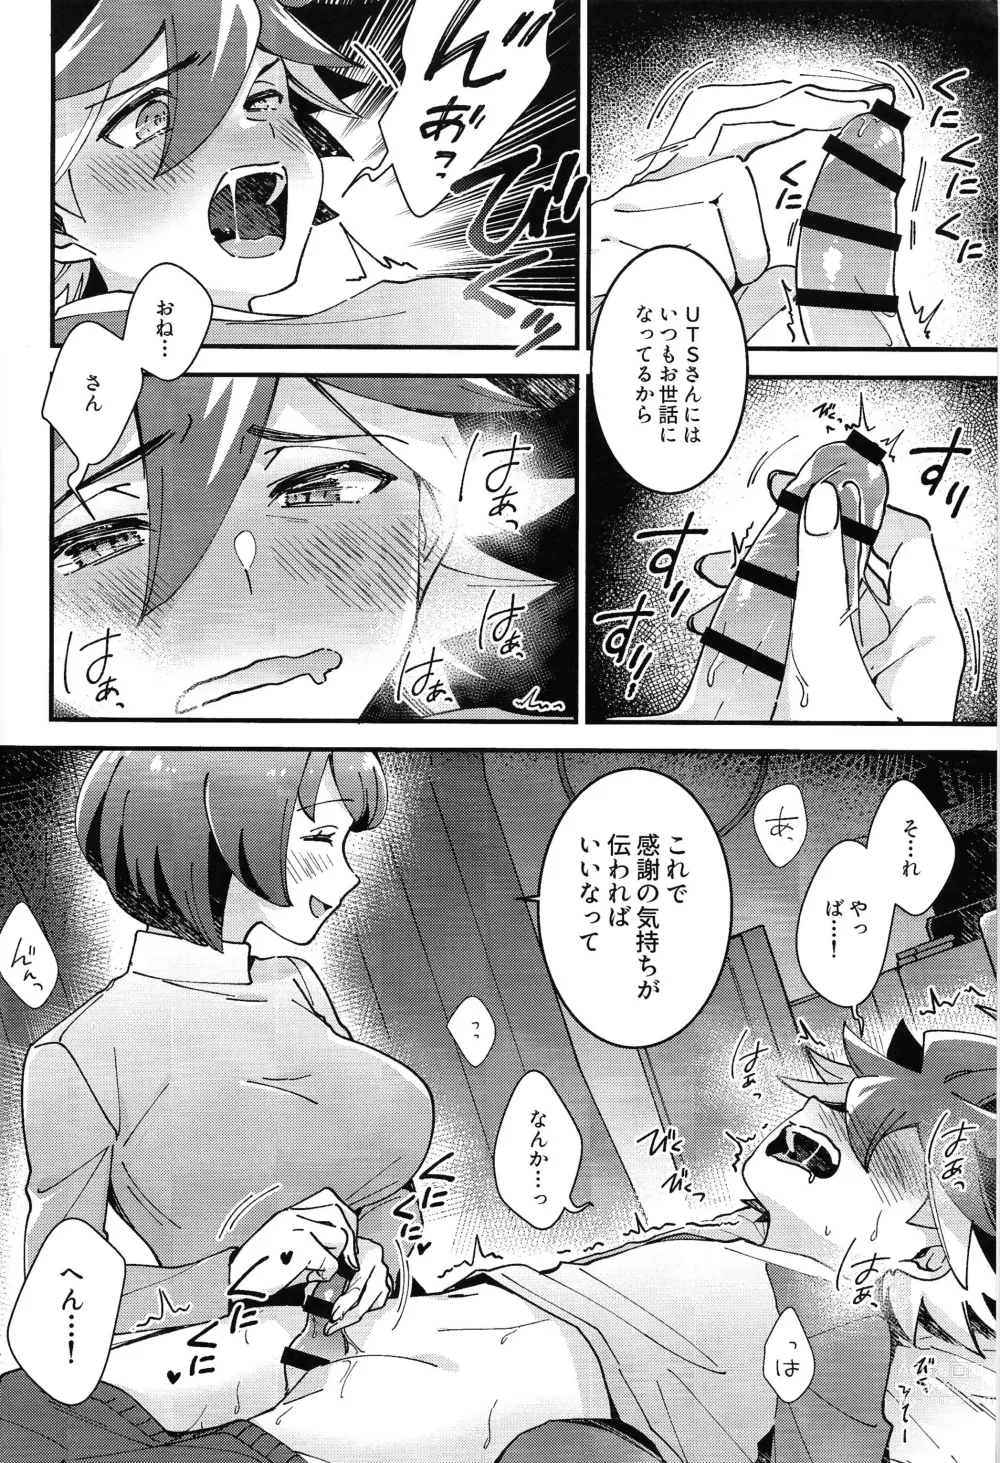 Page 4 of doujinshi Sonna Otoshigoro.